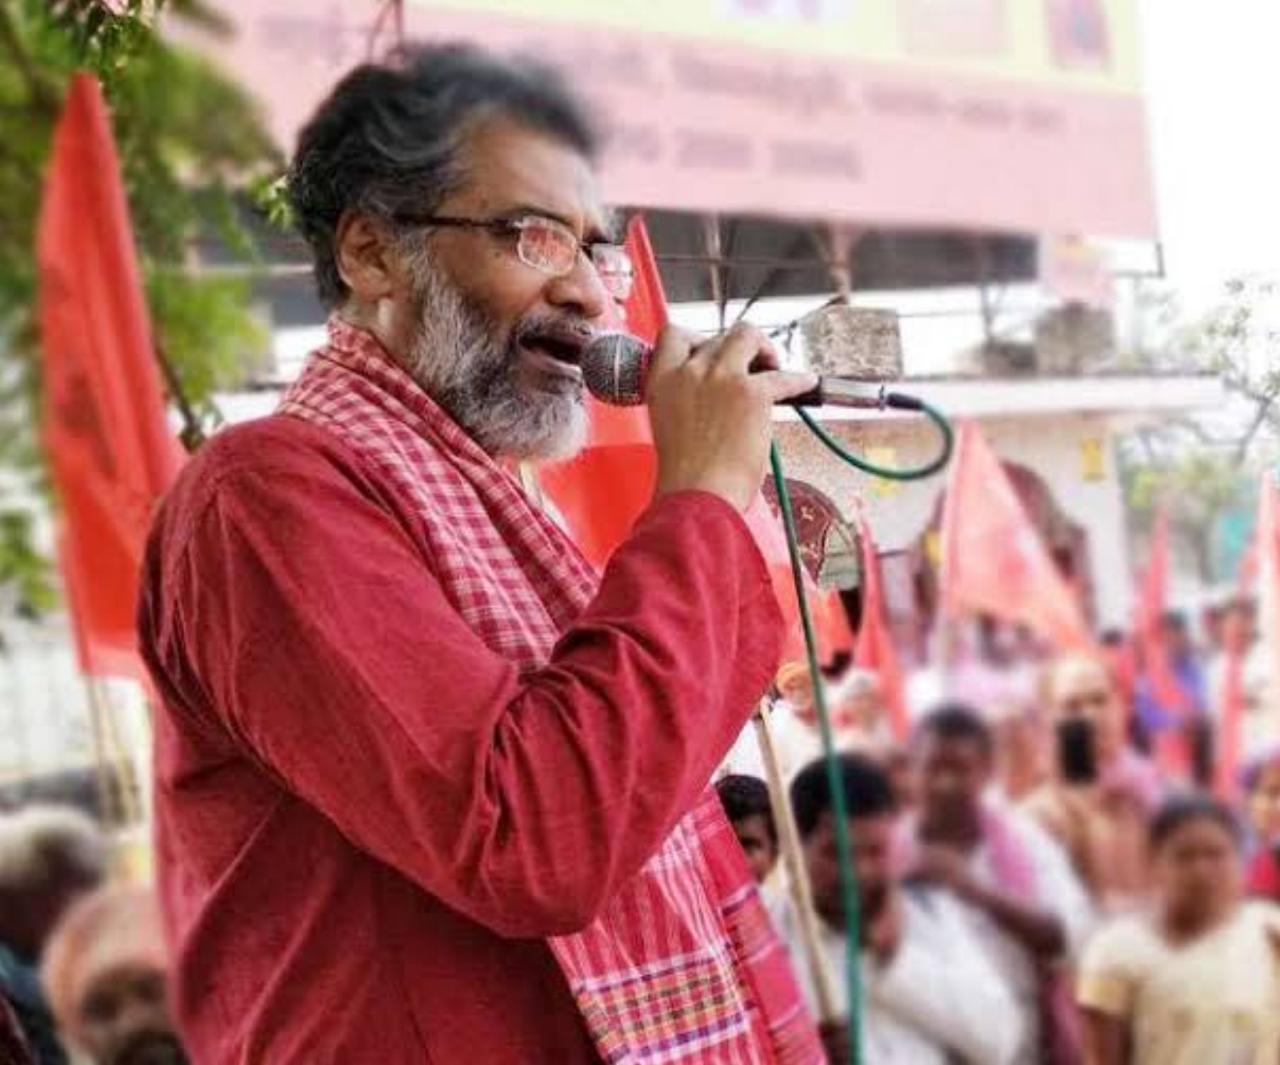 सरकार मजदूर-किसानों की बात नहीं कर रहीः दीपांकर